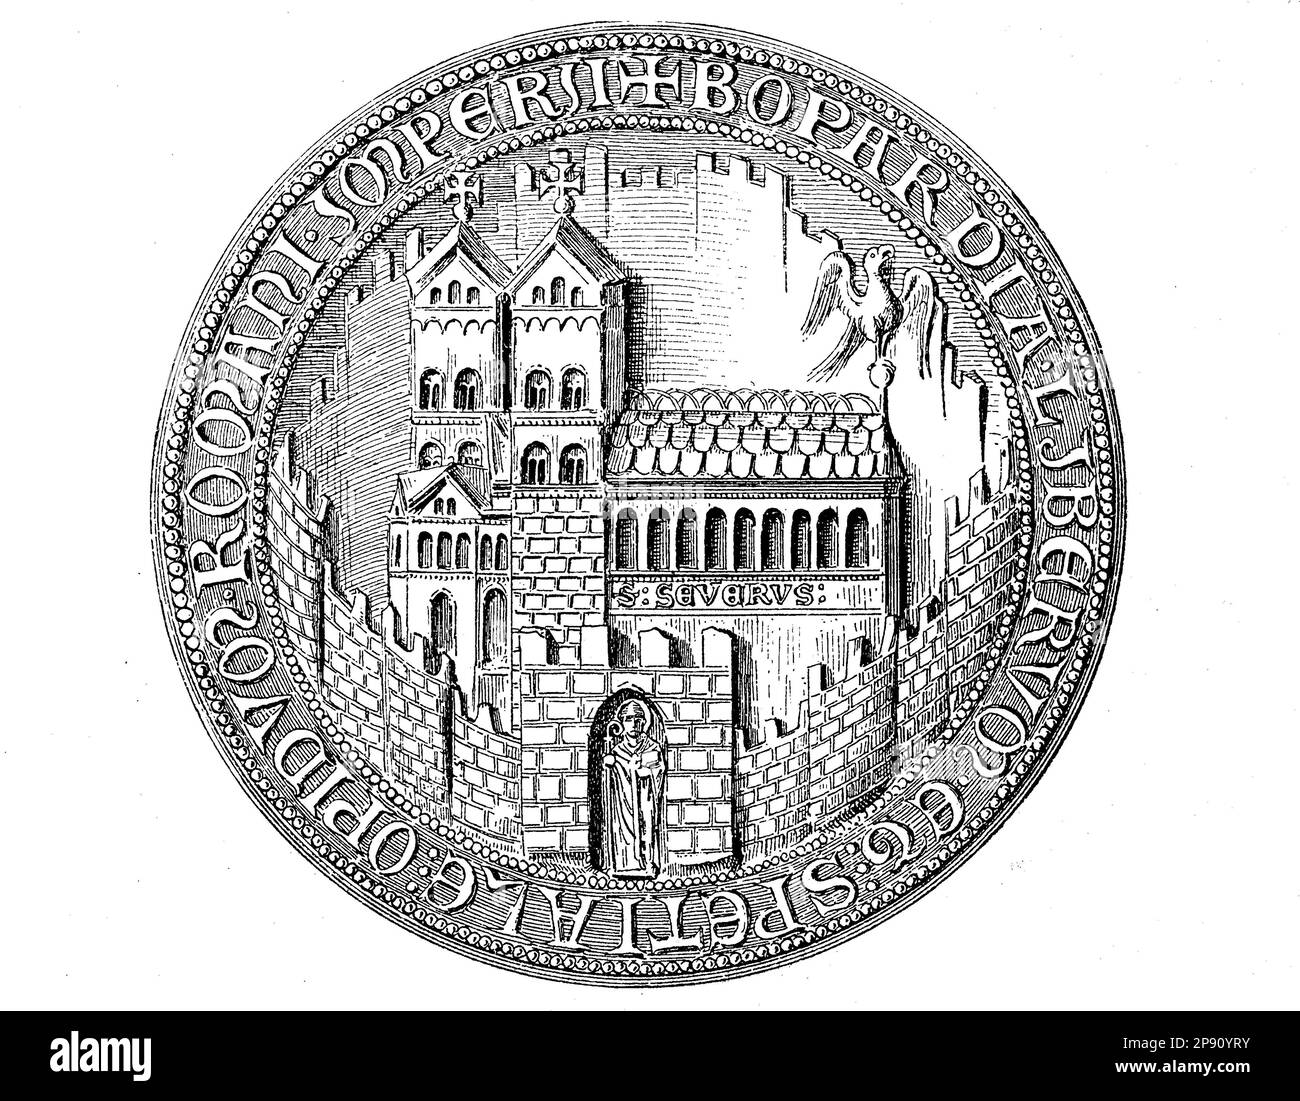 Mittelalterliches Stadtsiegel aus dem 13. bis 15. Jahrhundt, hier Boppard, Deutschland, Historisch, digital restaurierte Reproduktion von einer Vorlage aus dem 19. Jahrhundert Banque D'Images